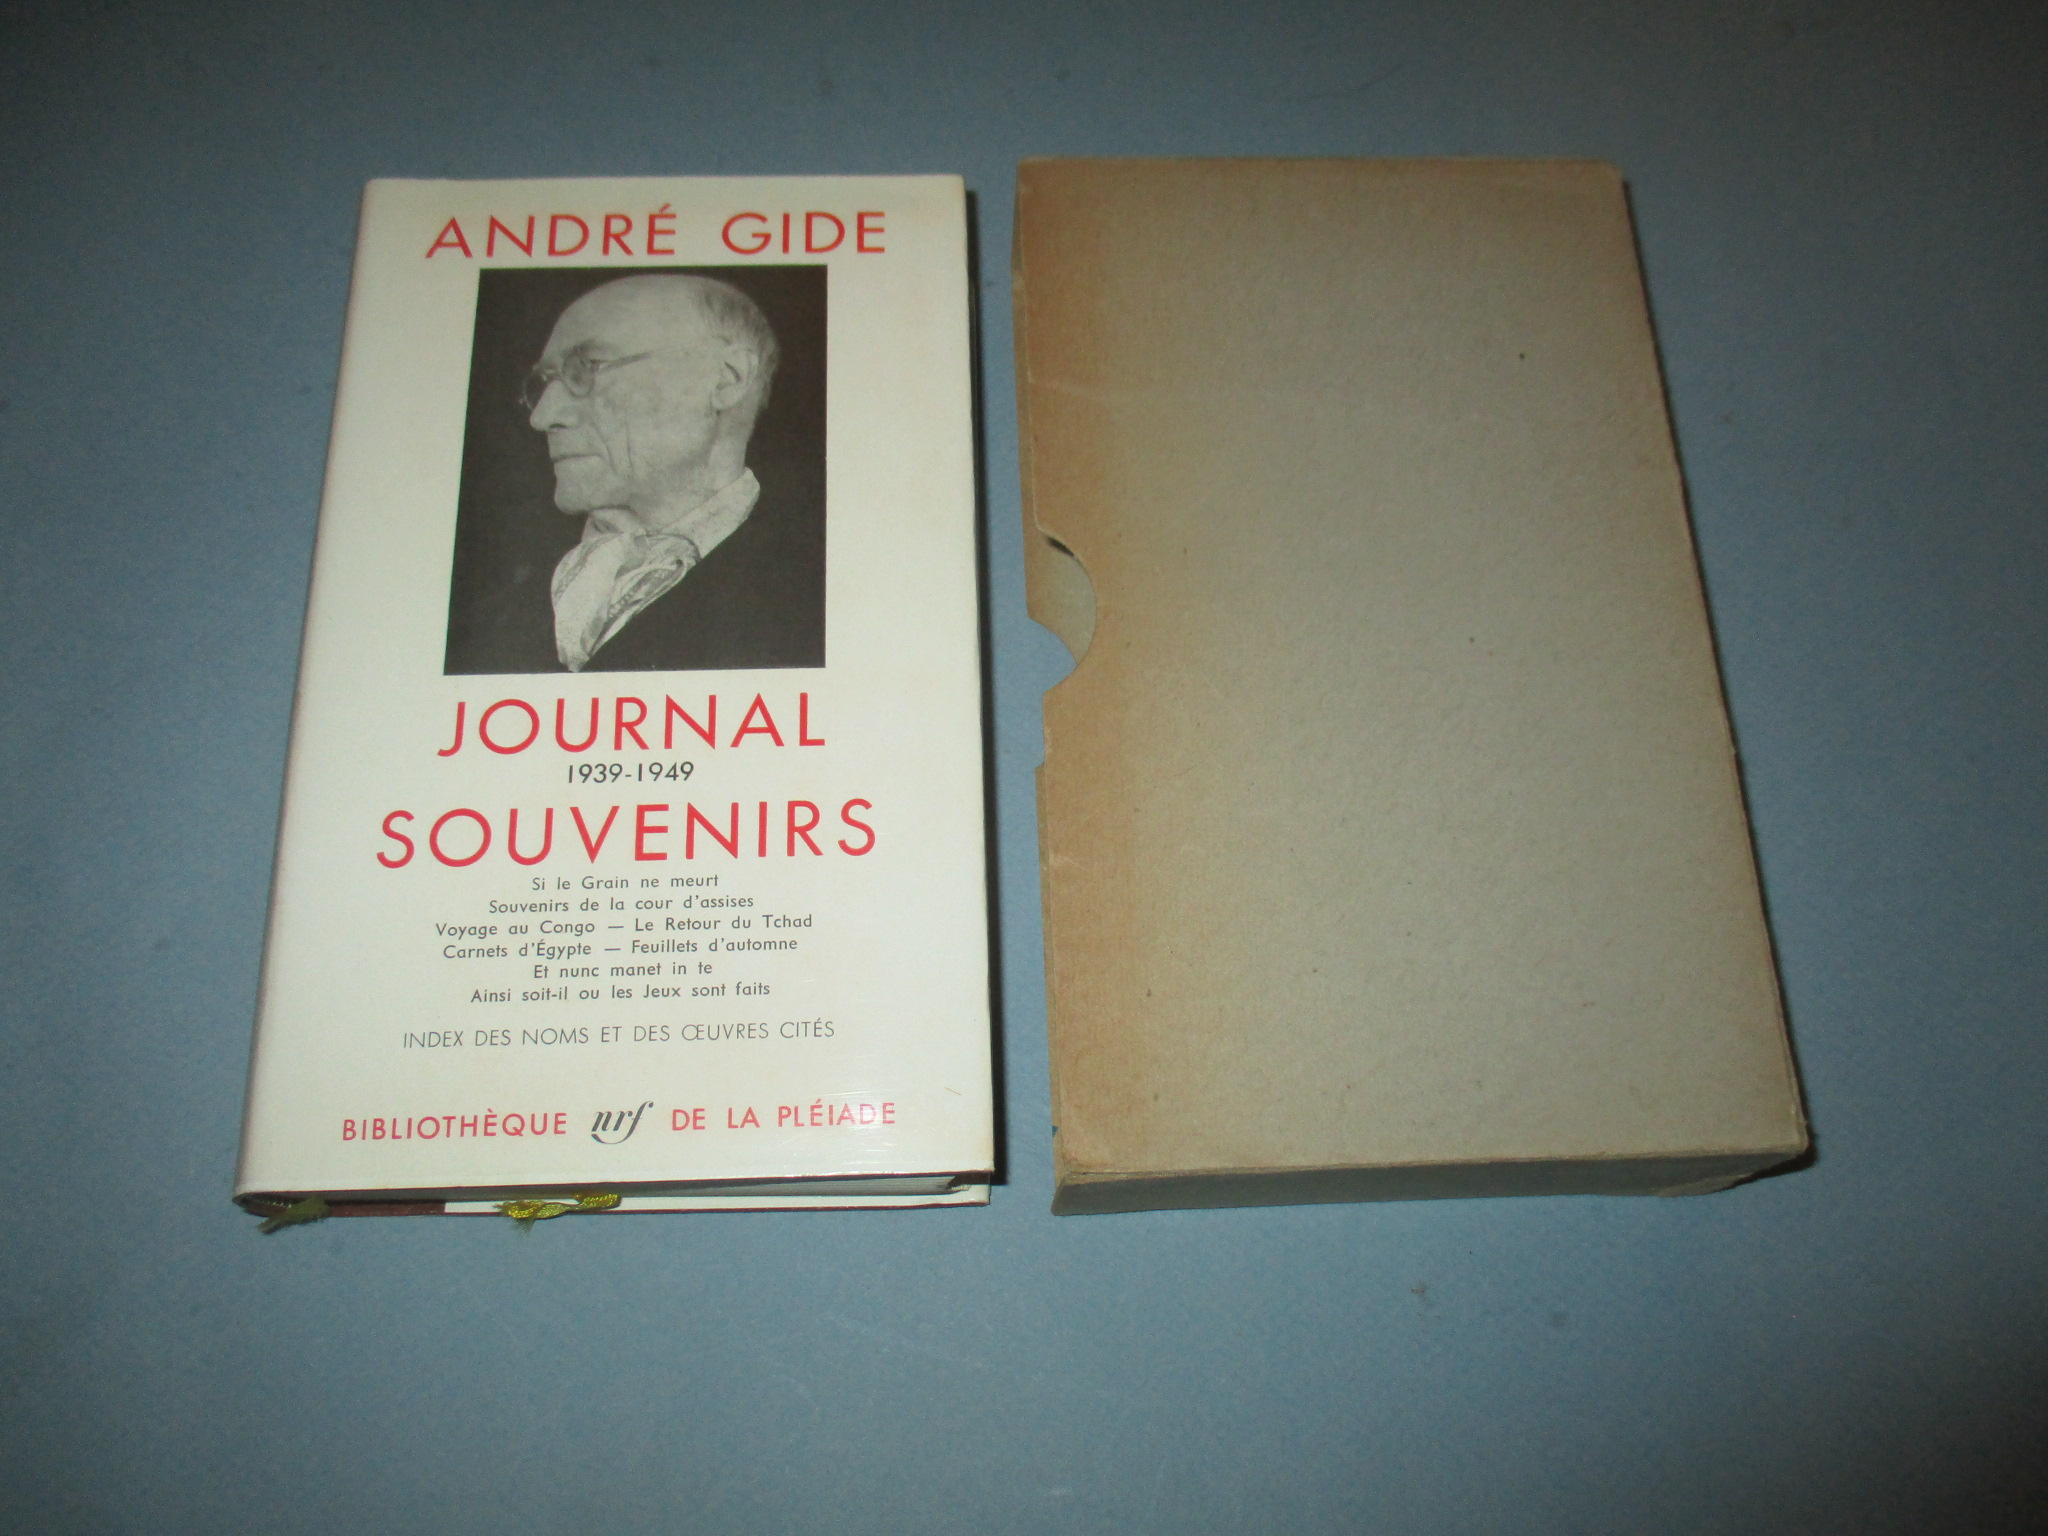 Journal 1939 - 1949 Souvenirs, André Gide, La Pléiade 1960